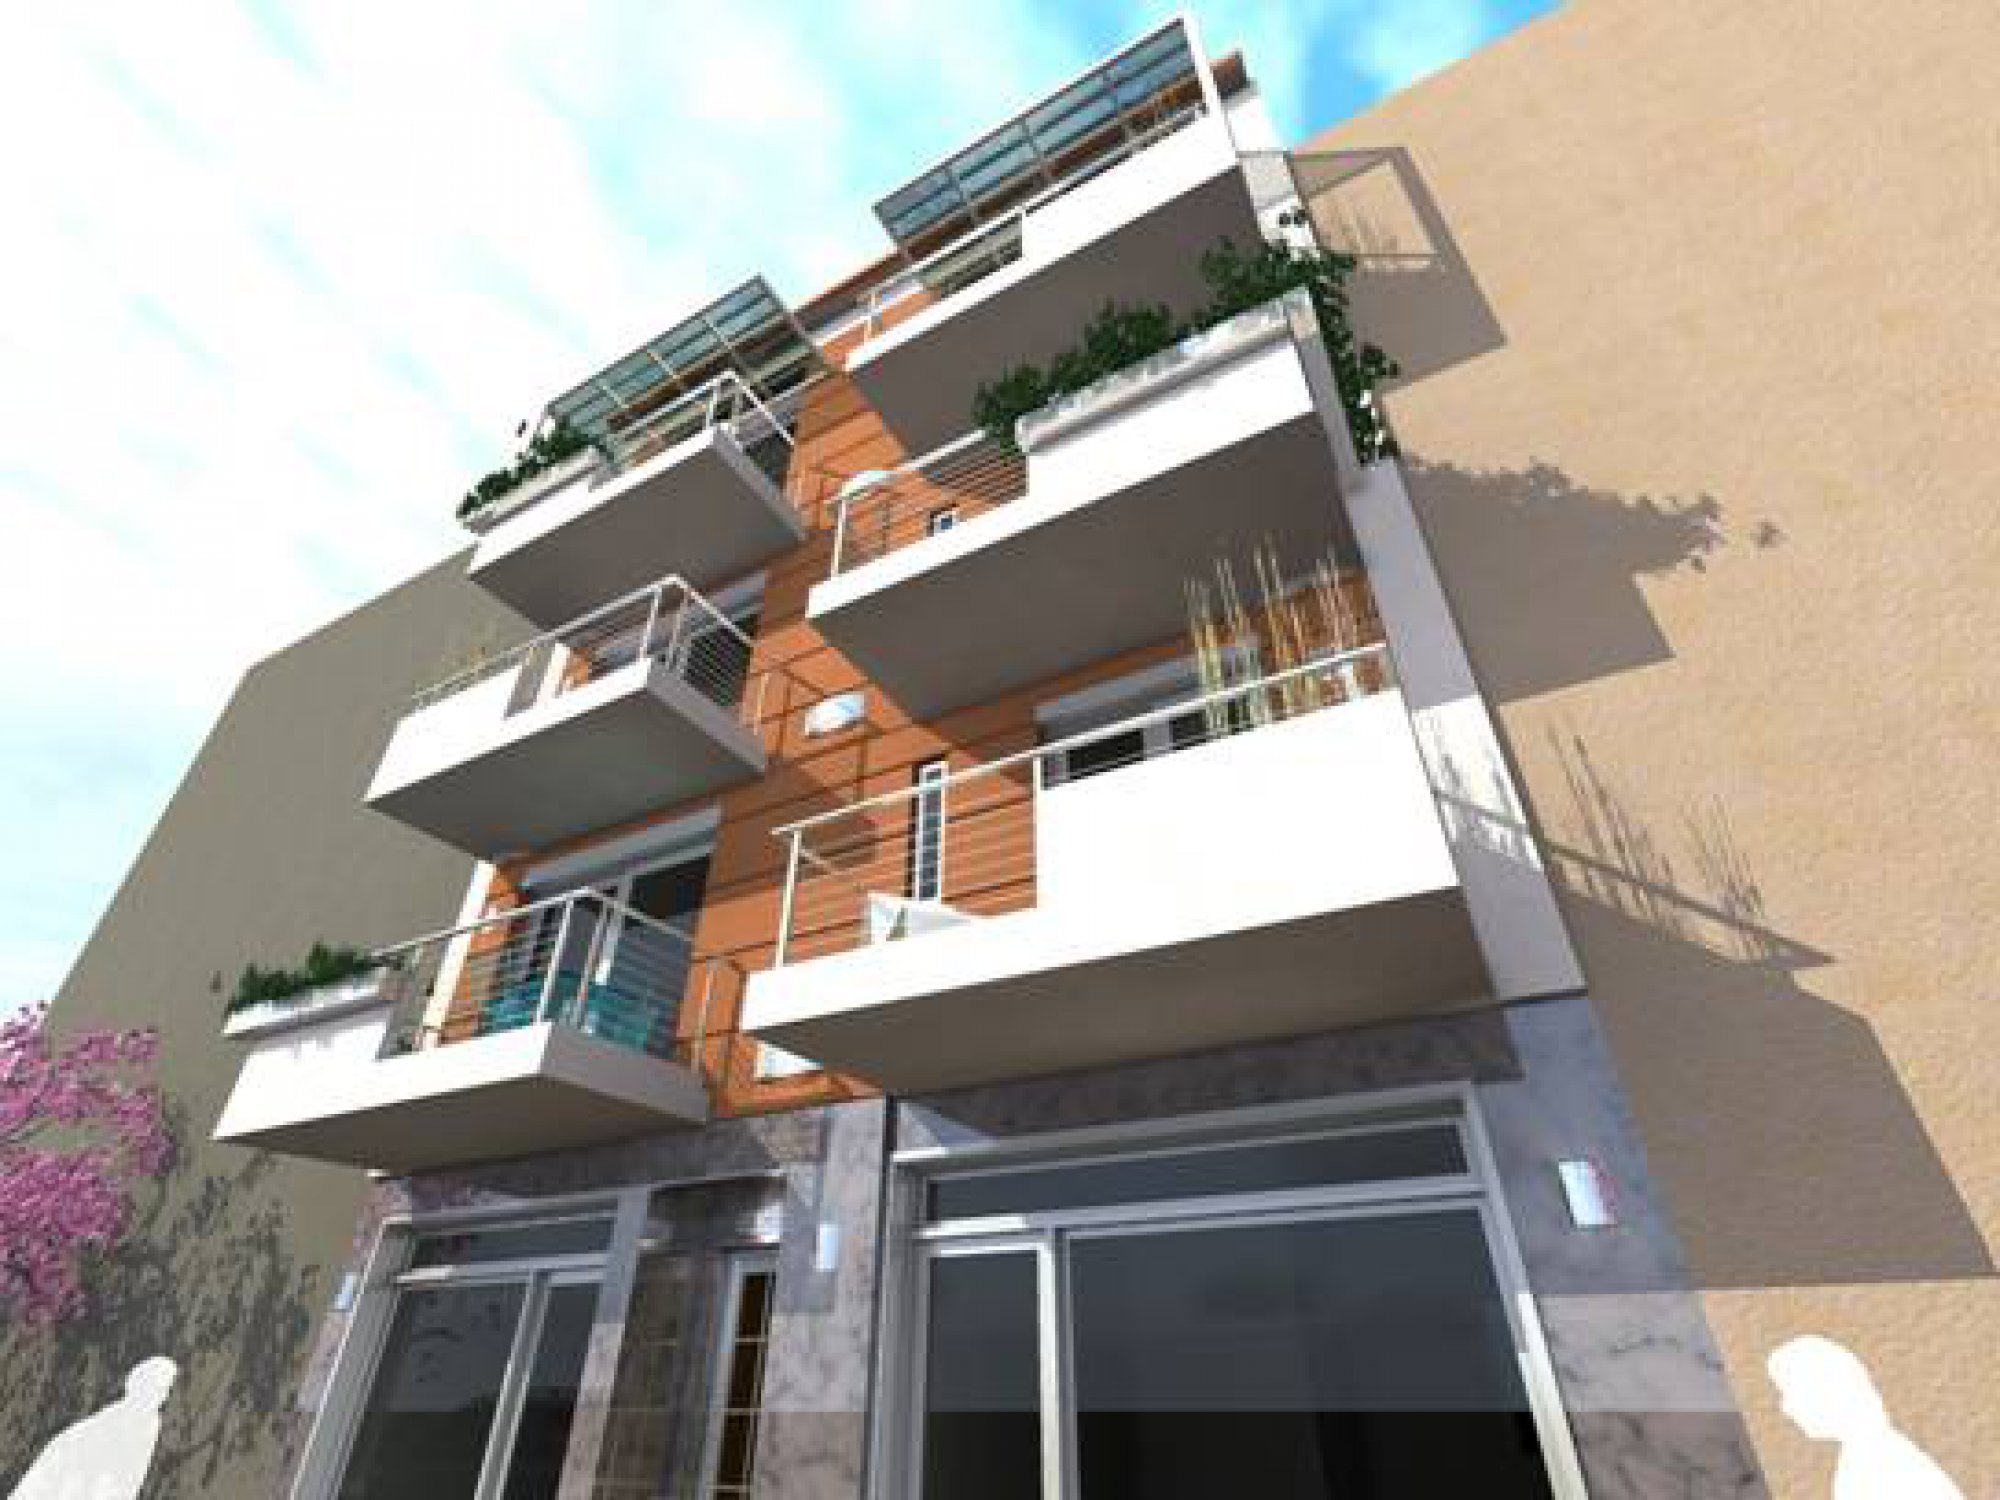 Μελέτη και κατασκευή τετραώροφου κτιρίου καταστημάτων και κατοικιών στο κέντρο των Ιωαννίνων